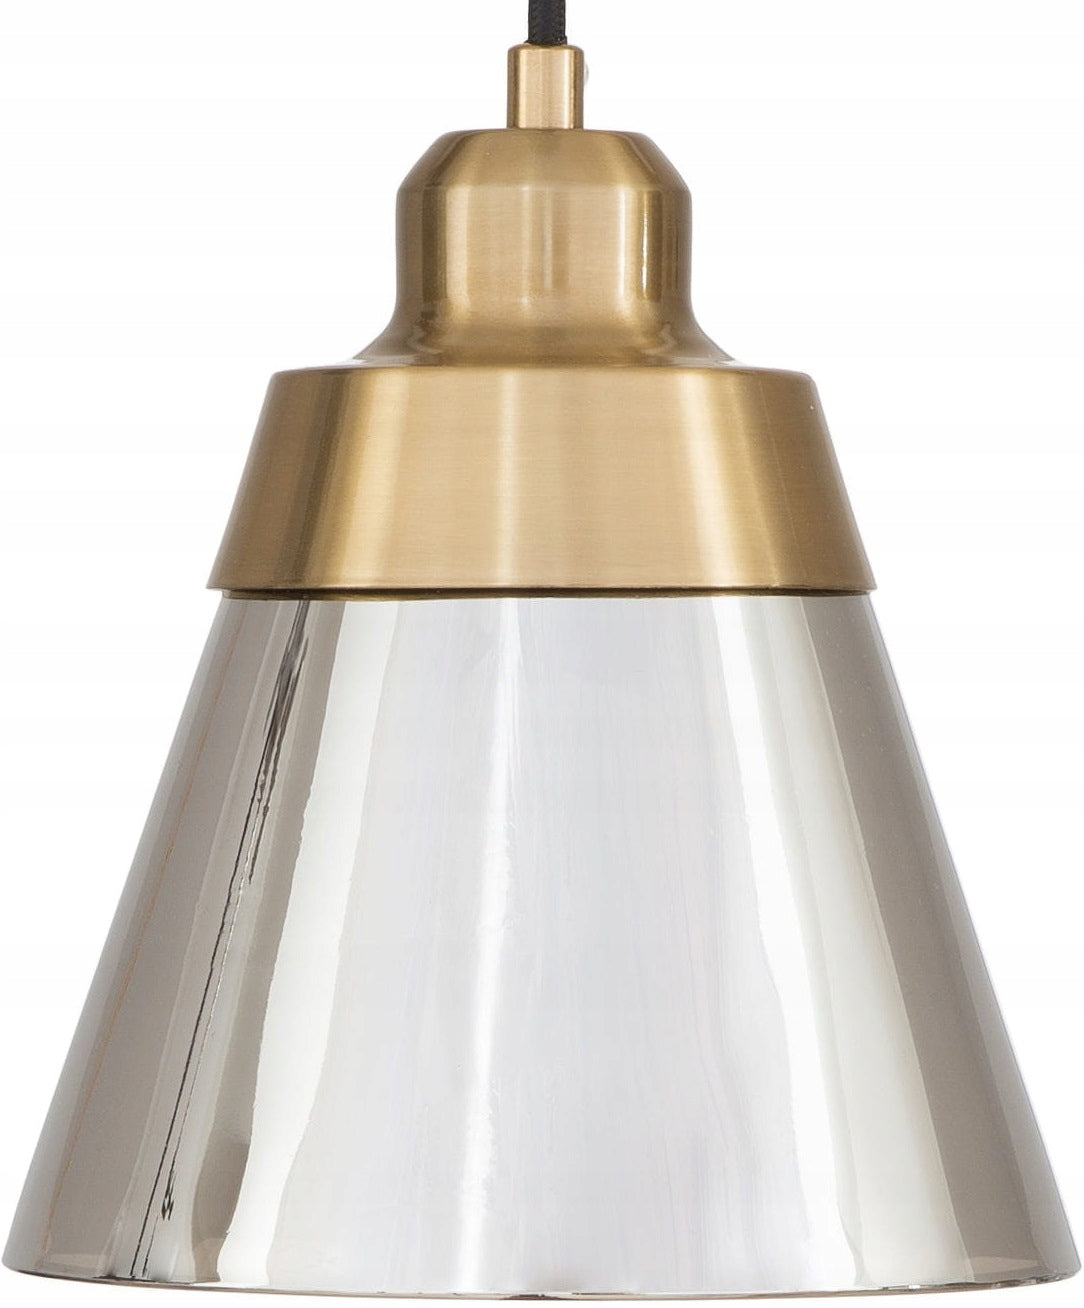 Hengende Lampe Glass Speilkegle (Wsg06A1)